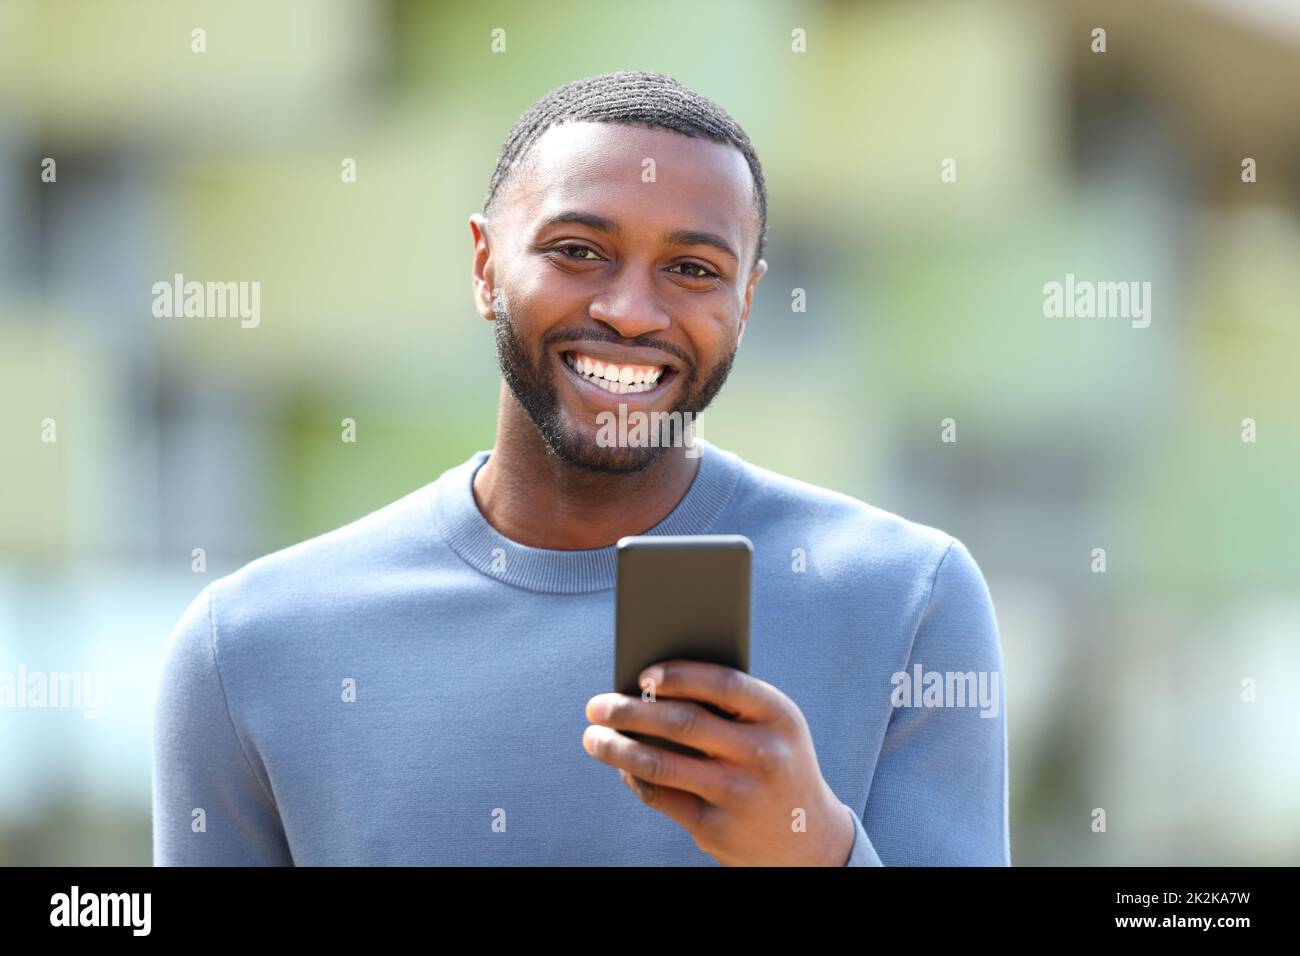 Un homme heureux avec une peau noire tient le téléphone et vous regarde Banque D'Images